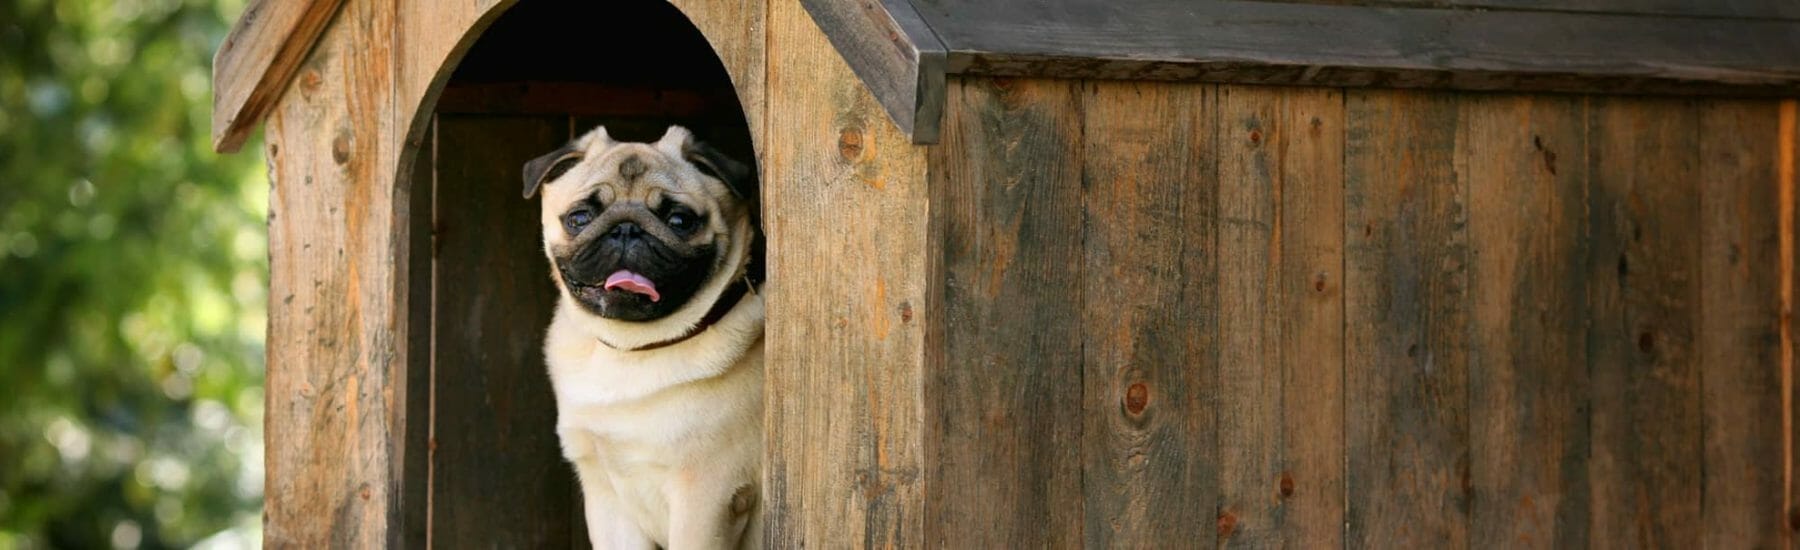 Small pug inside of a dog house